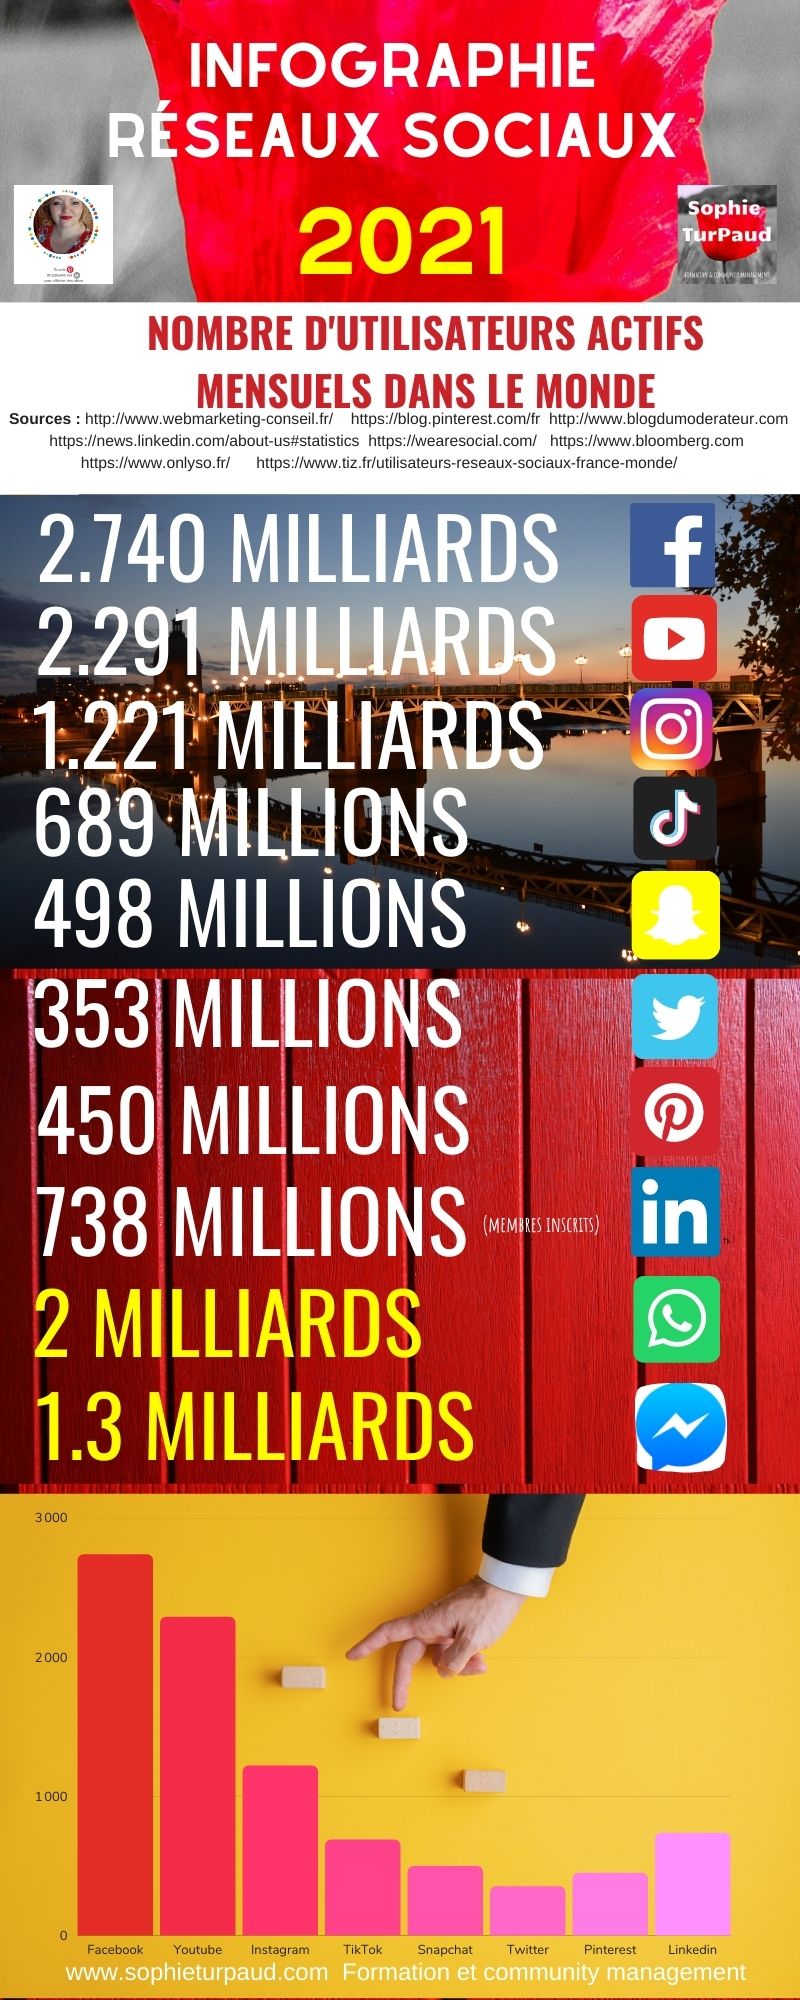 Infographie chiffres réseaux sociaux 2021 via @sophieturpaud #socialmedia